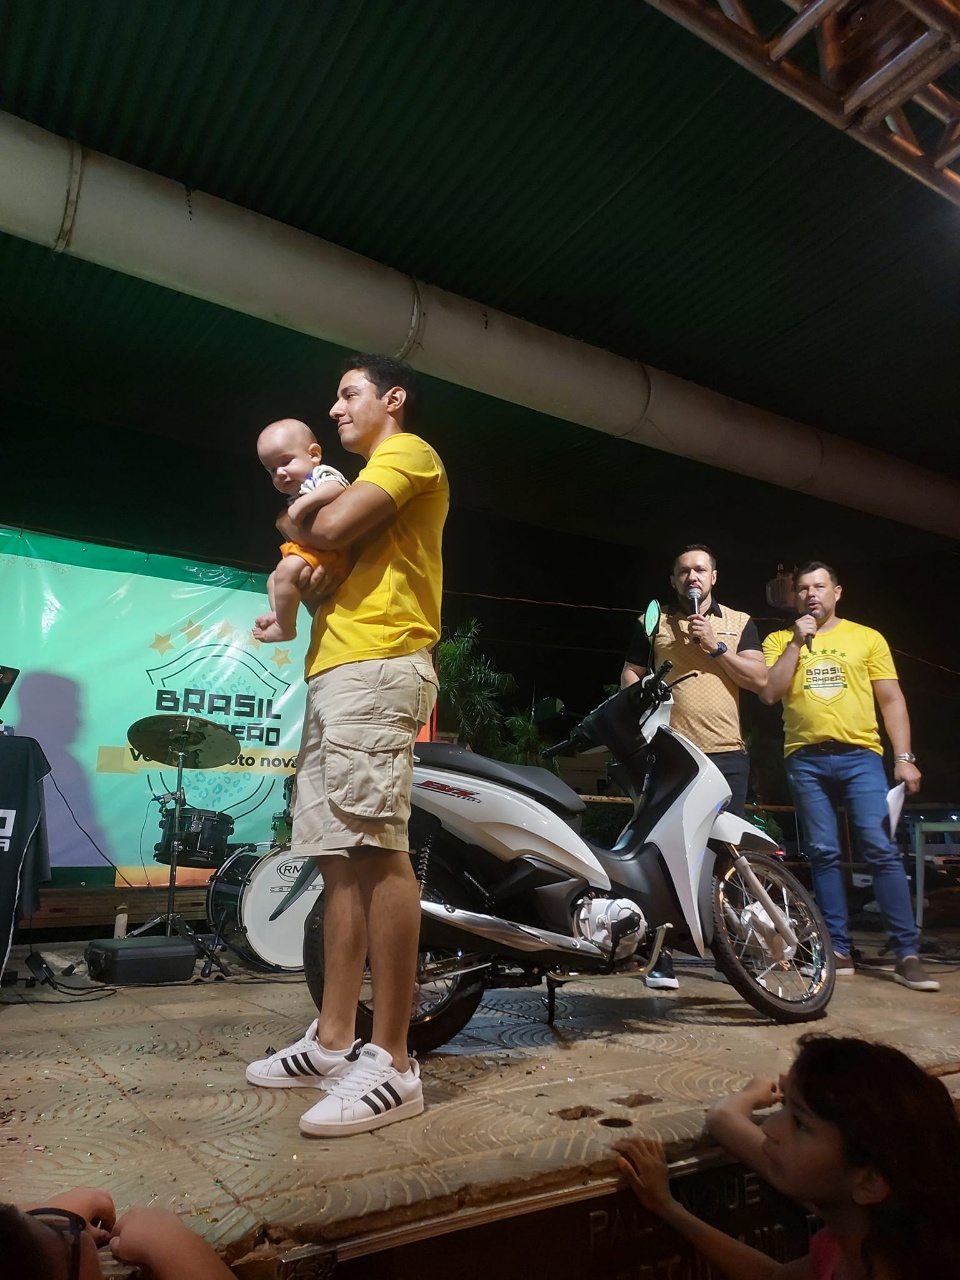 Fotos e Ganhador da campanha Brasil Campeão e Você de Moto Nova 2022.